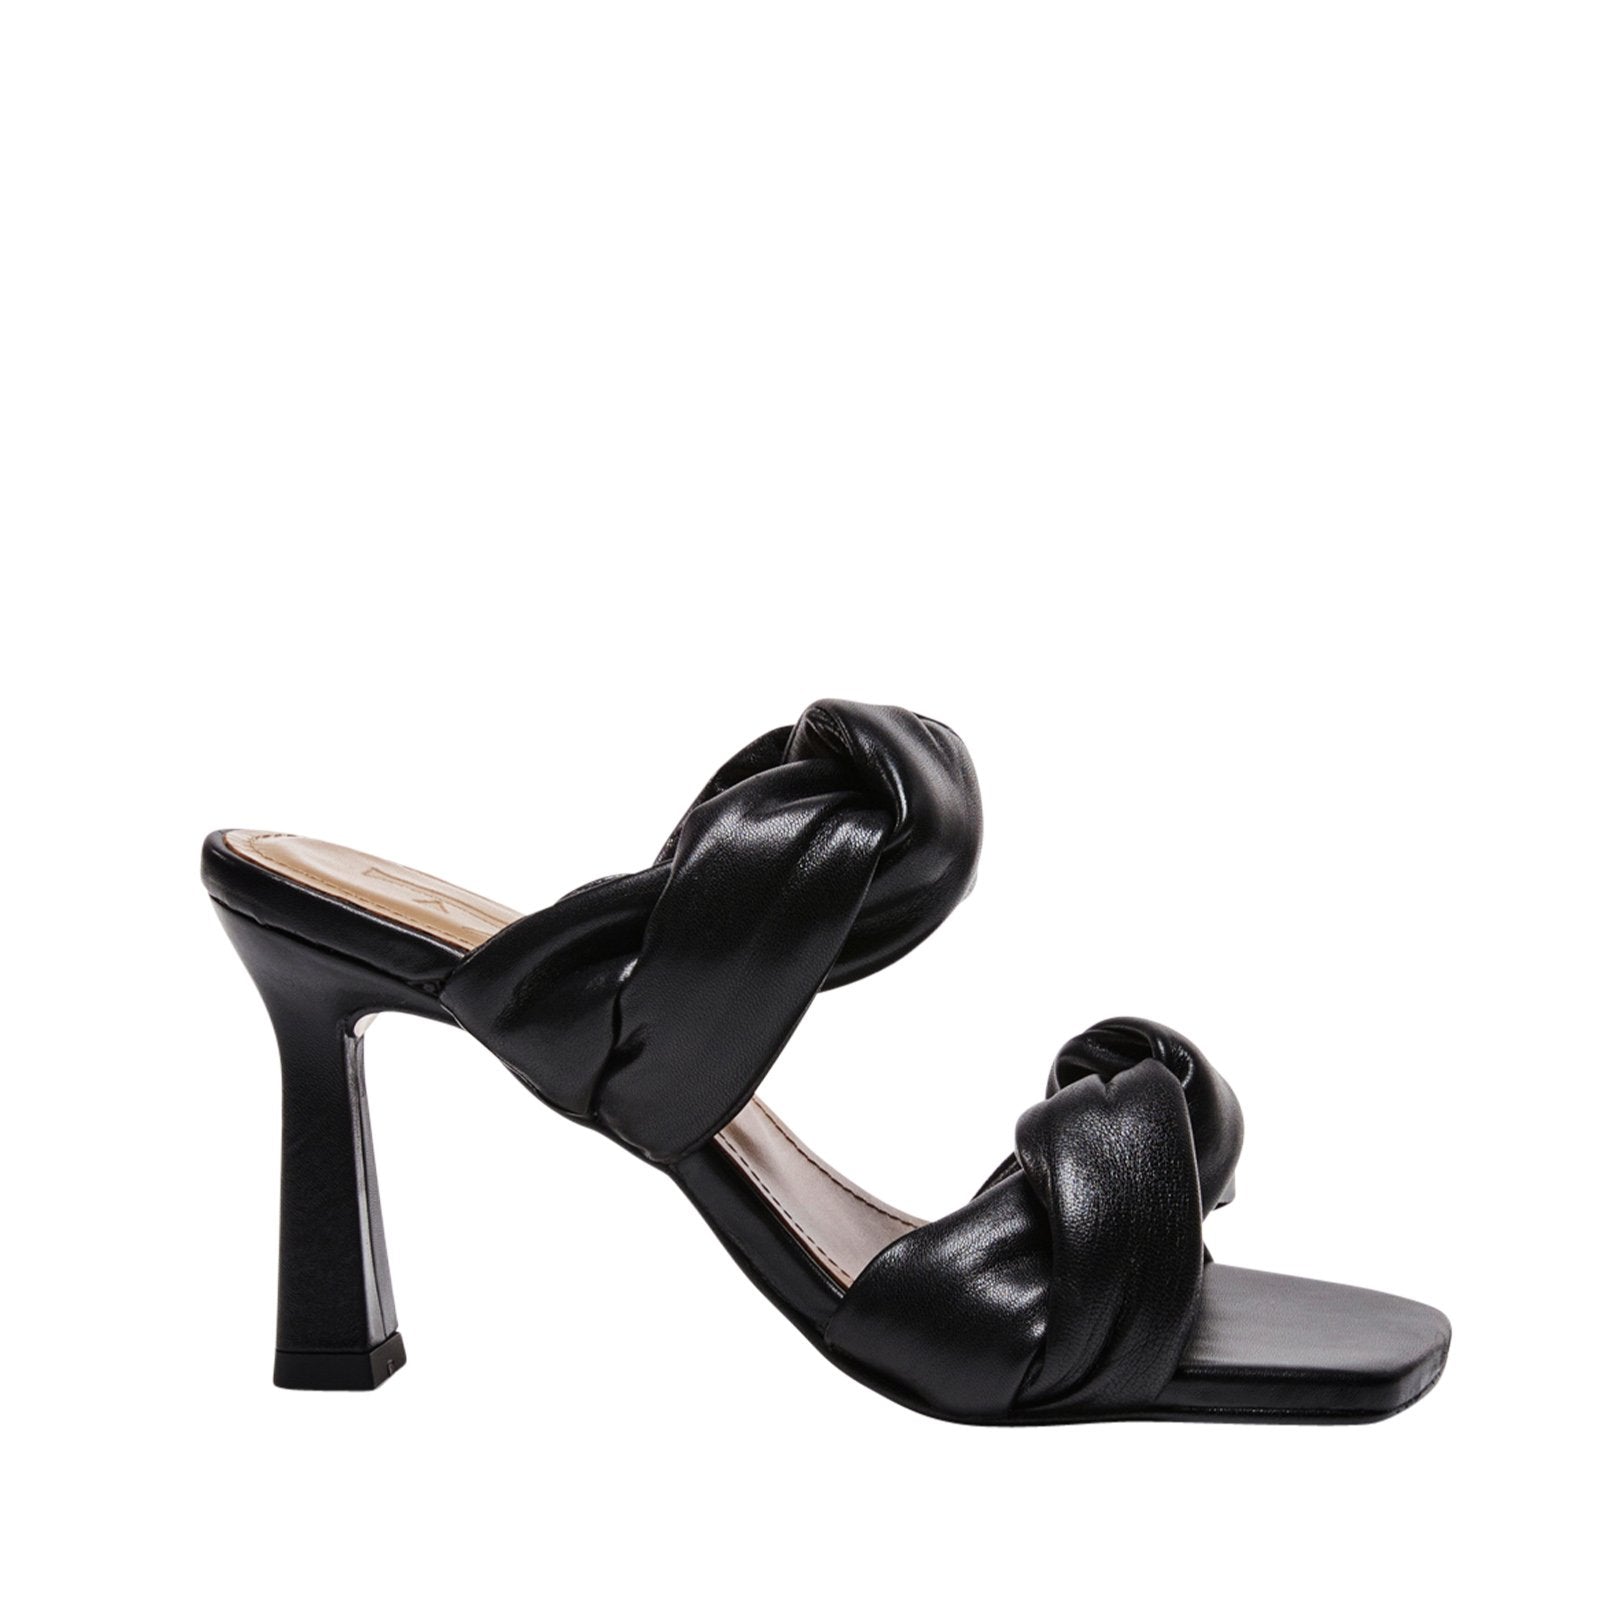 River Leather Black Heeled Sandals 21010416001-001 - 1